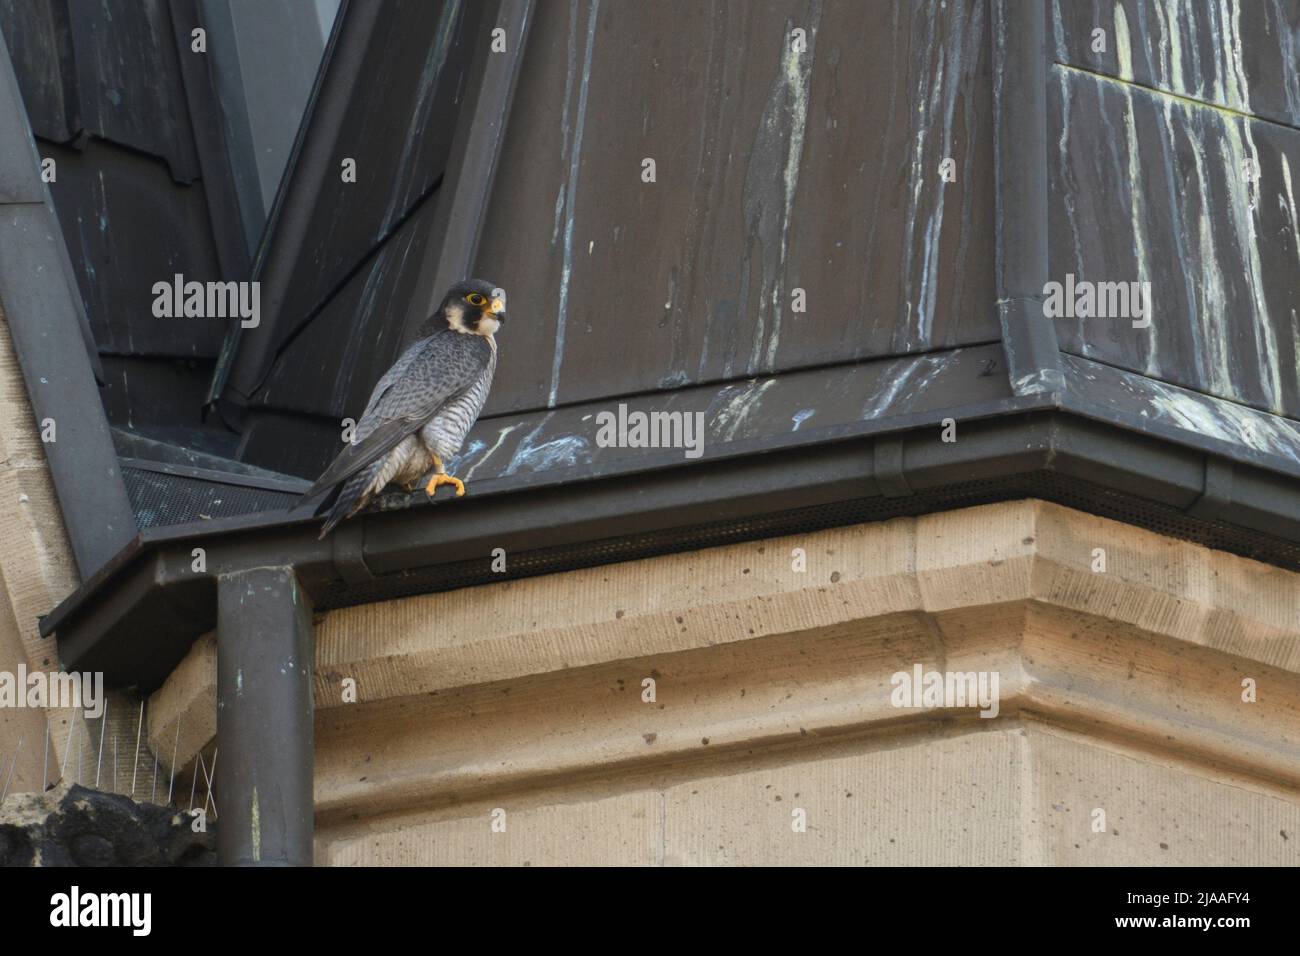 Faucon pèlerin / Wanderfalke ( Falco peregrinus ), homme adulte, tercel, perché sur un toit d'église, situation typique, faune, Europe. Banque D'Images